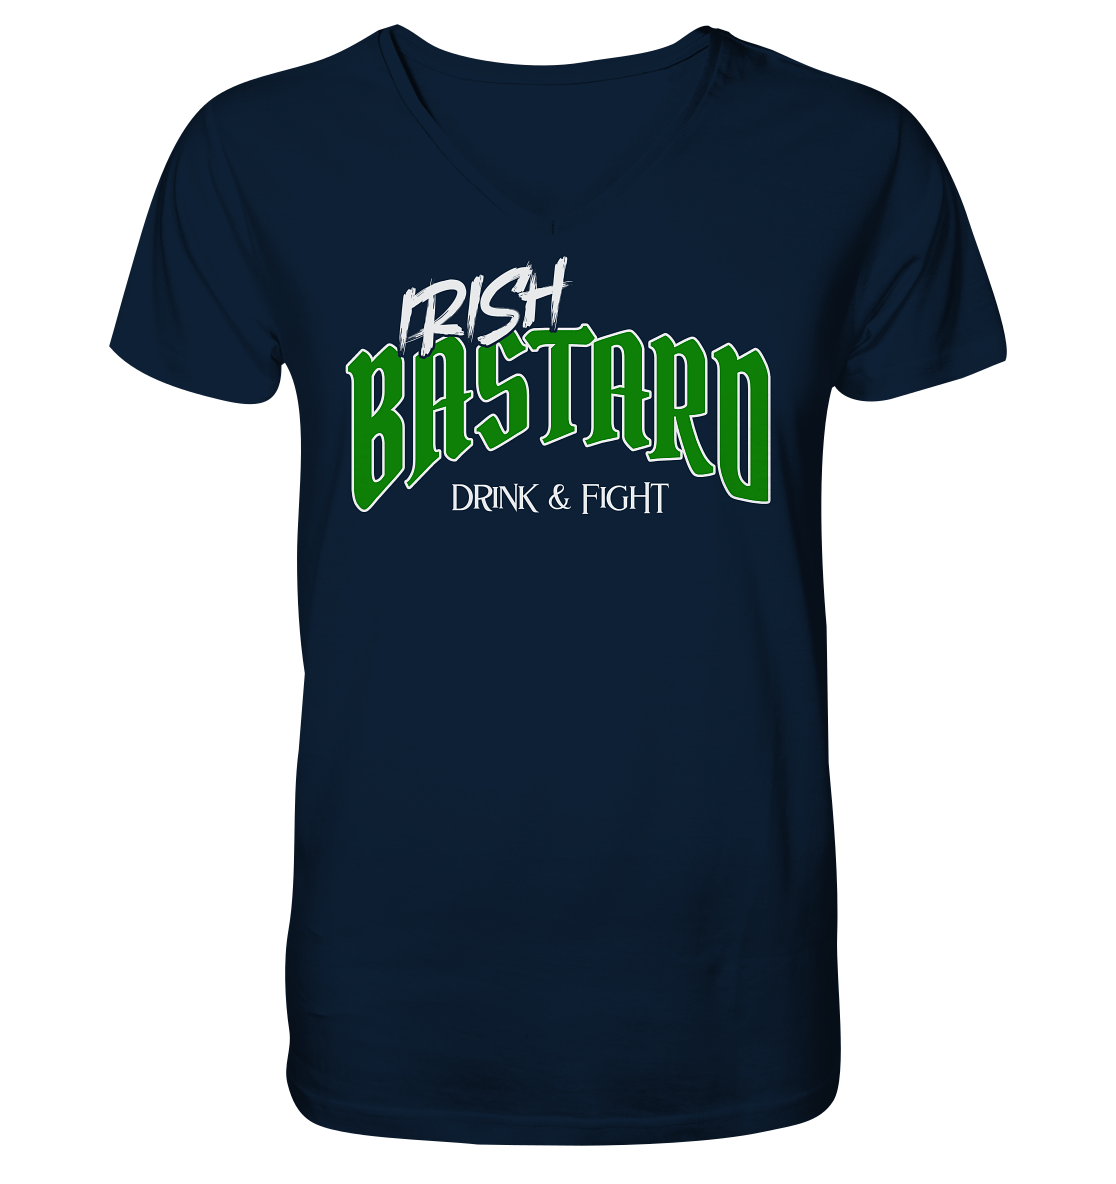 Irish Bastard "Drink & Fight" - V-Neck Shirt